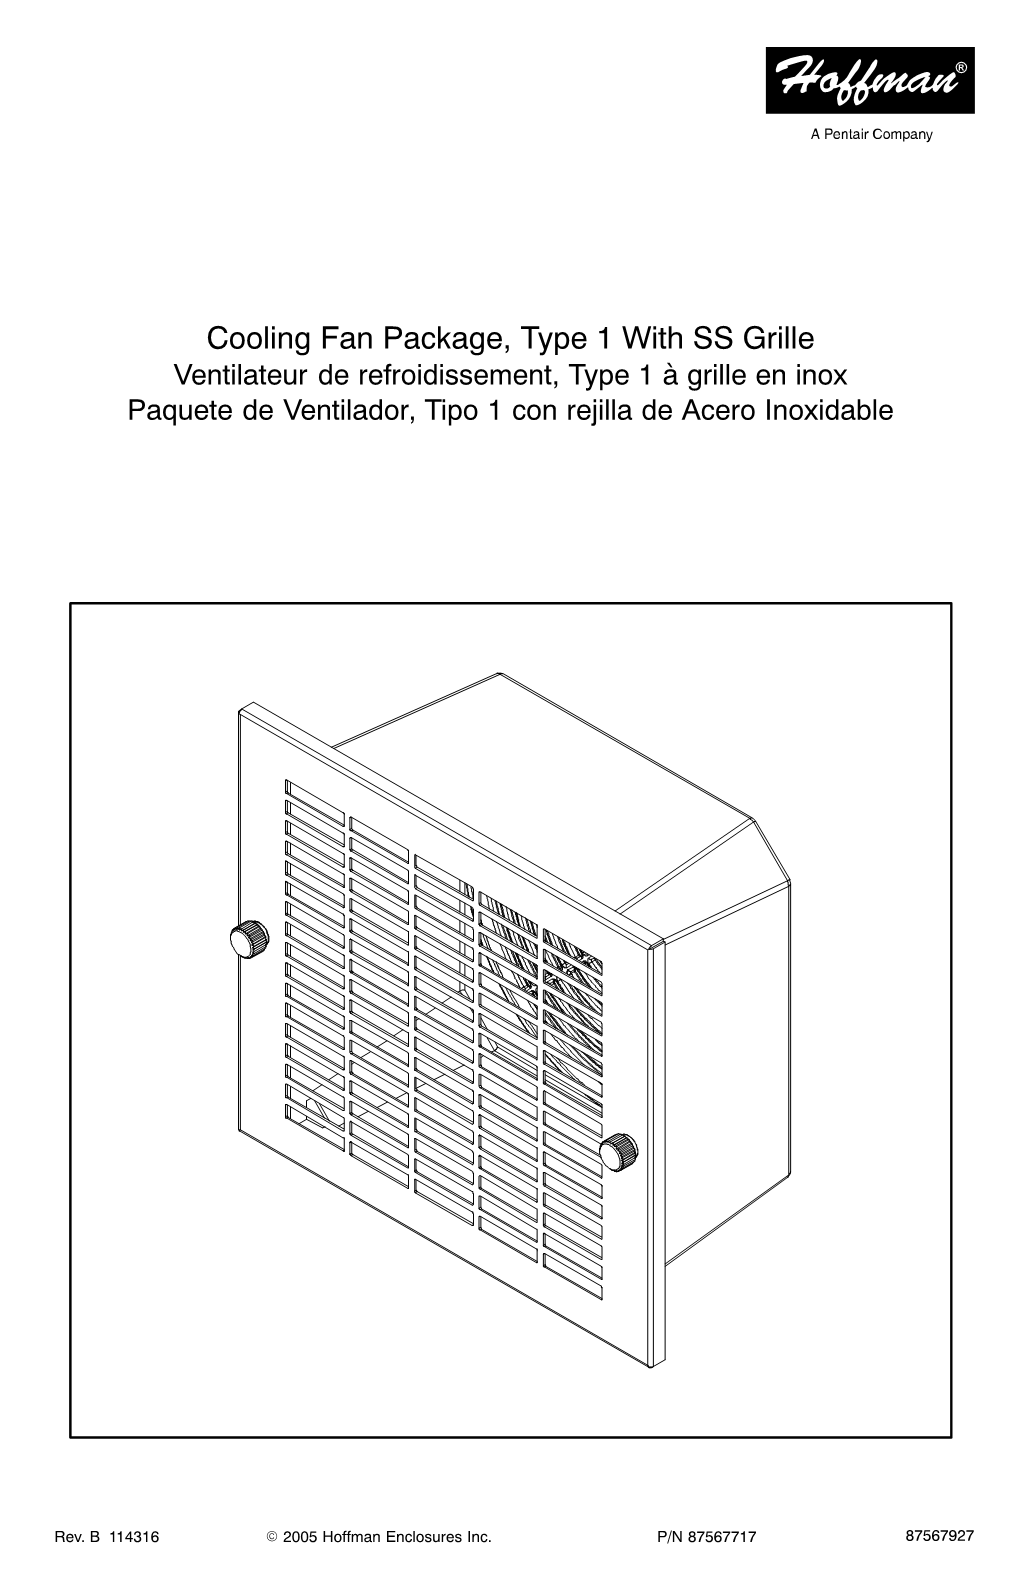 Cooling Fan Package, Type 1 with SS Grille Ventilateur De Refroidissement, Type 1 À Grille En Inox Paquete De Ventilador, Tipo 1 Con Rejilla De Acero Inoxidable